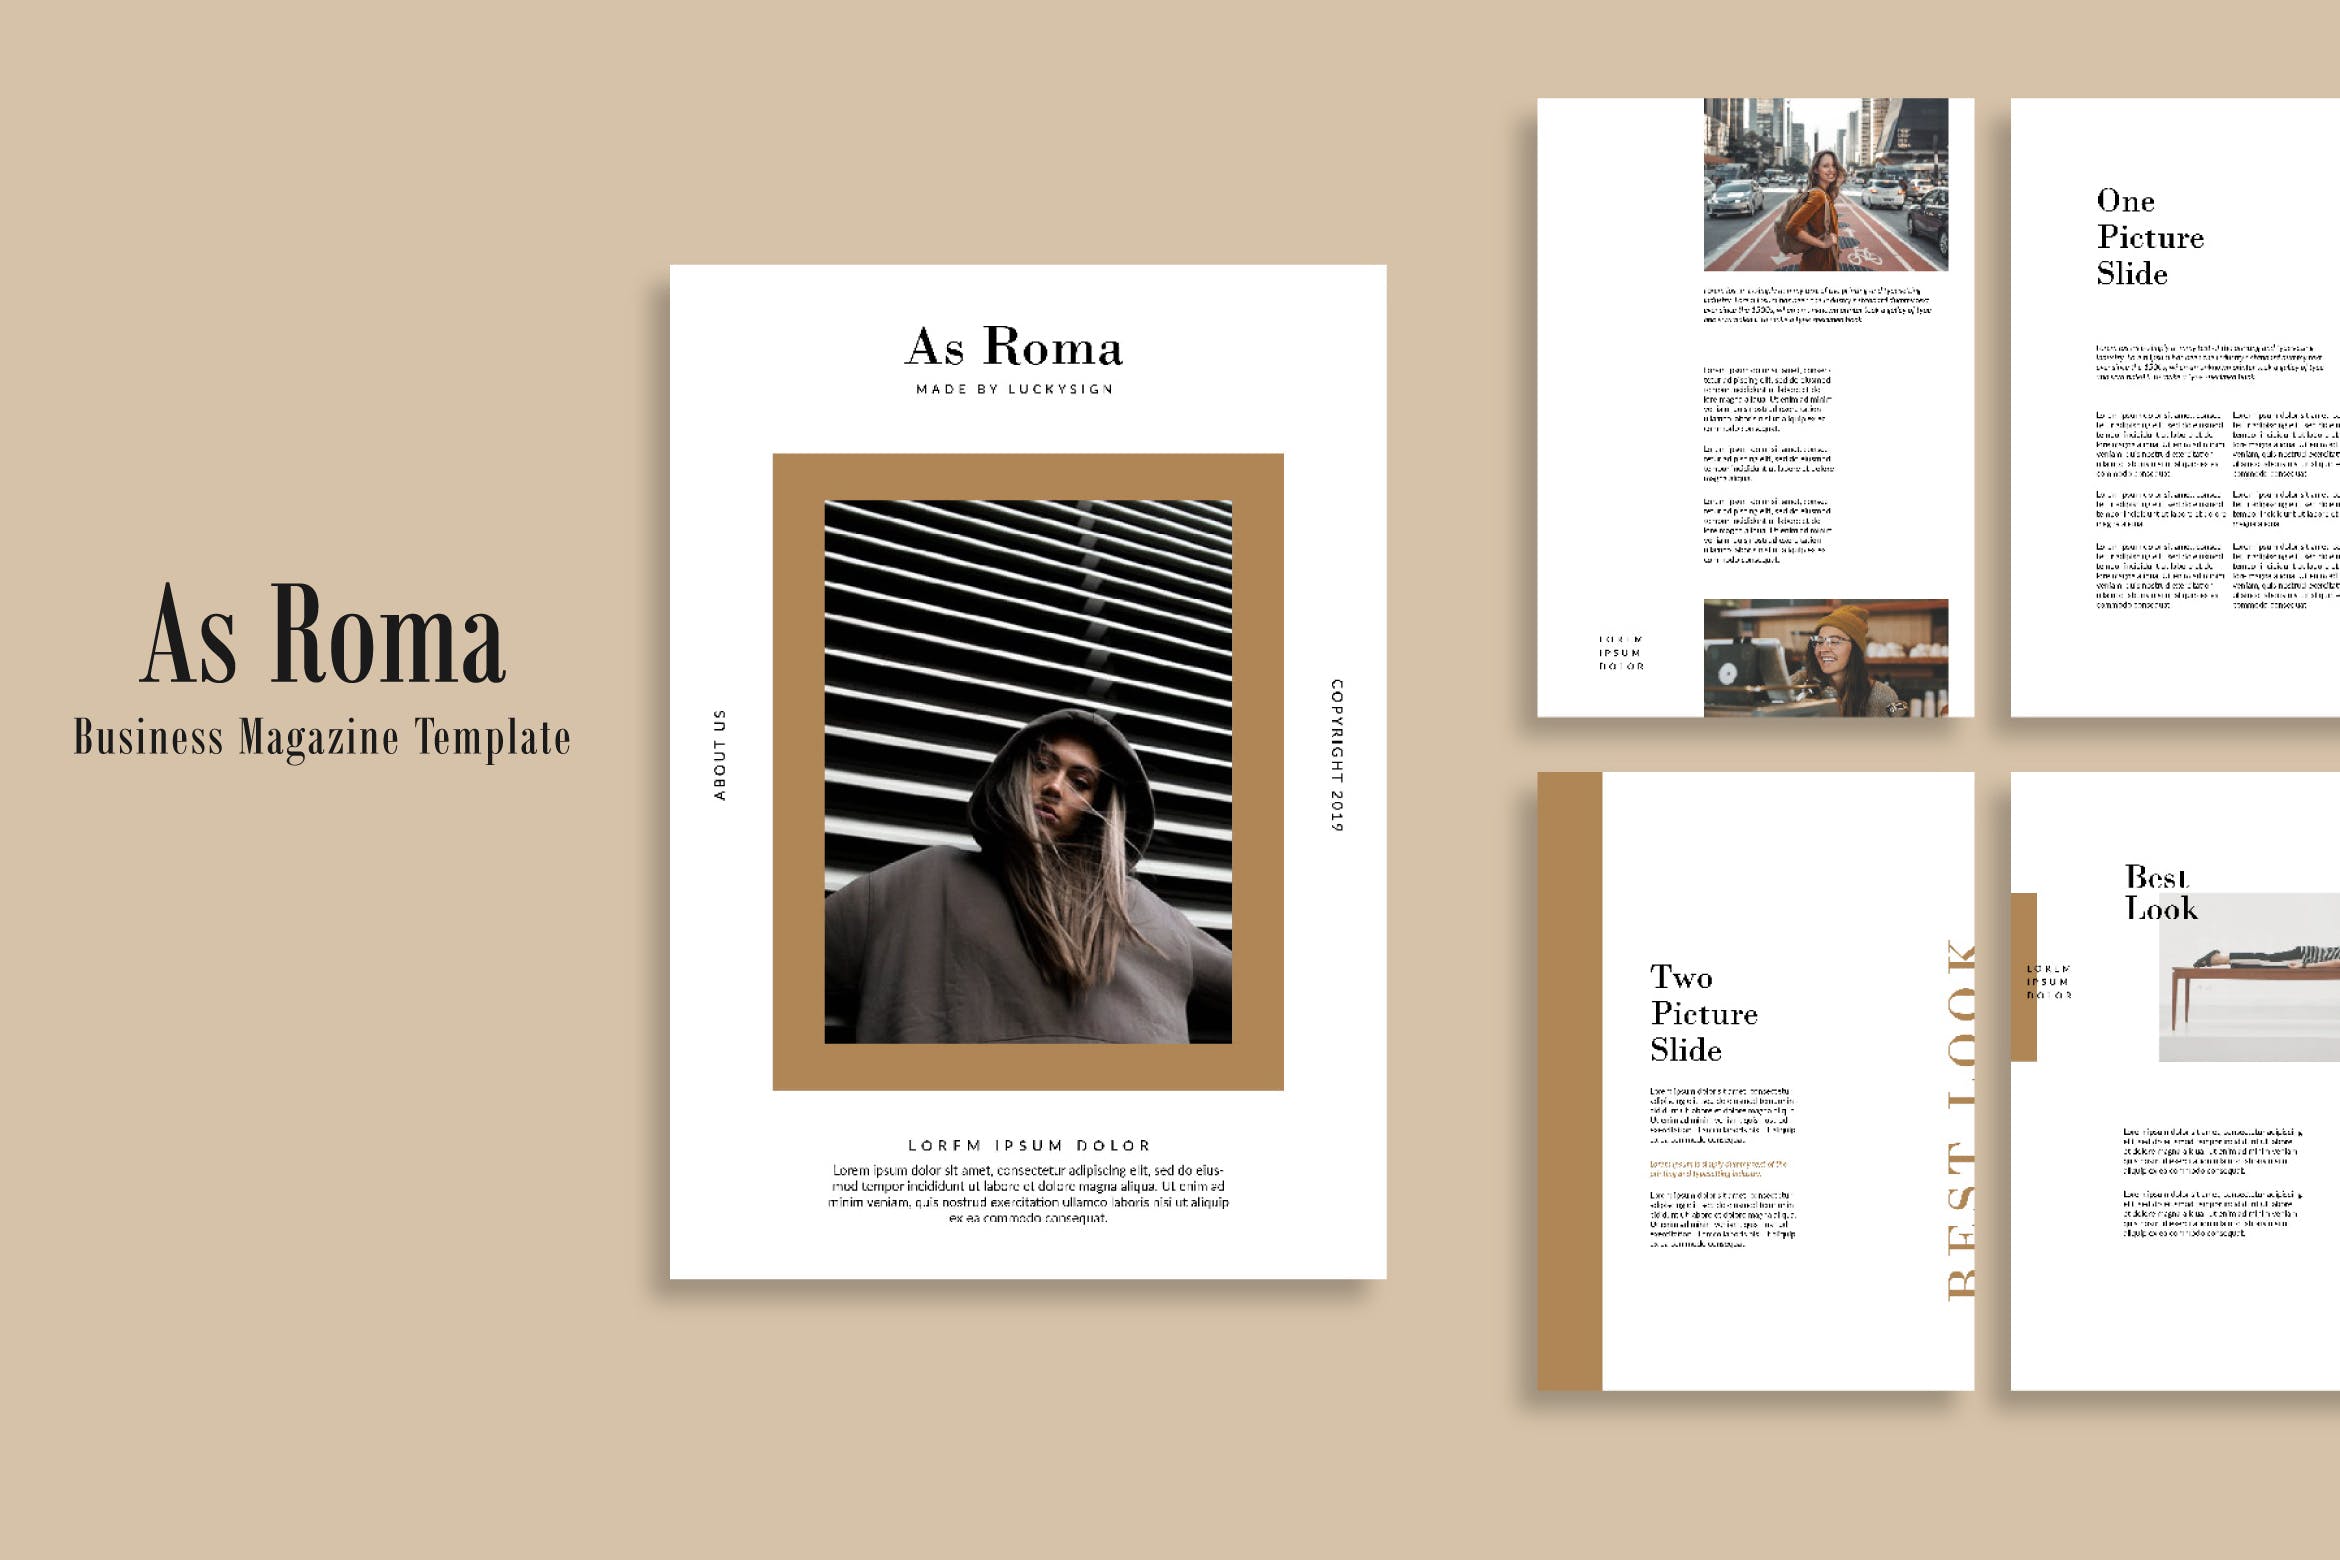 现代商业第一素材精选杂志/企业第一素材精选杂志版式设计模板 As Roma Business Magazine Template – LS插图